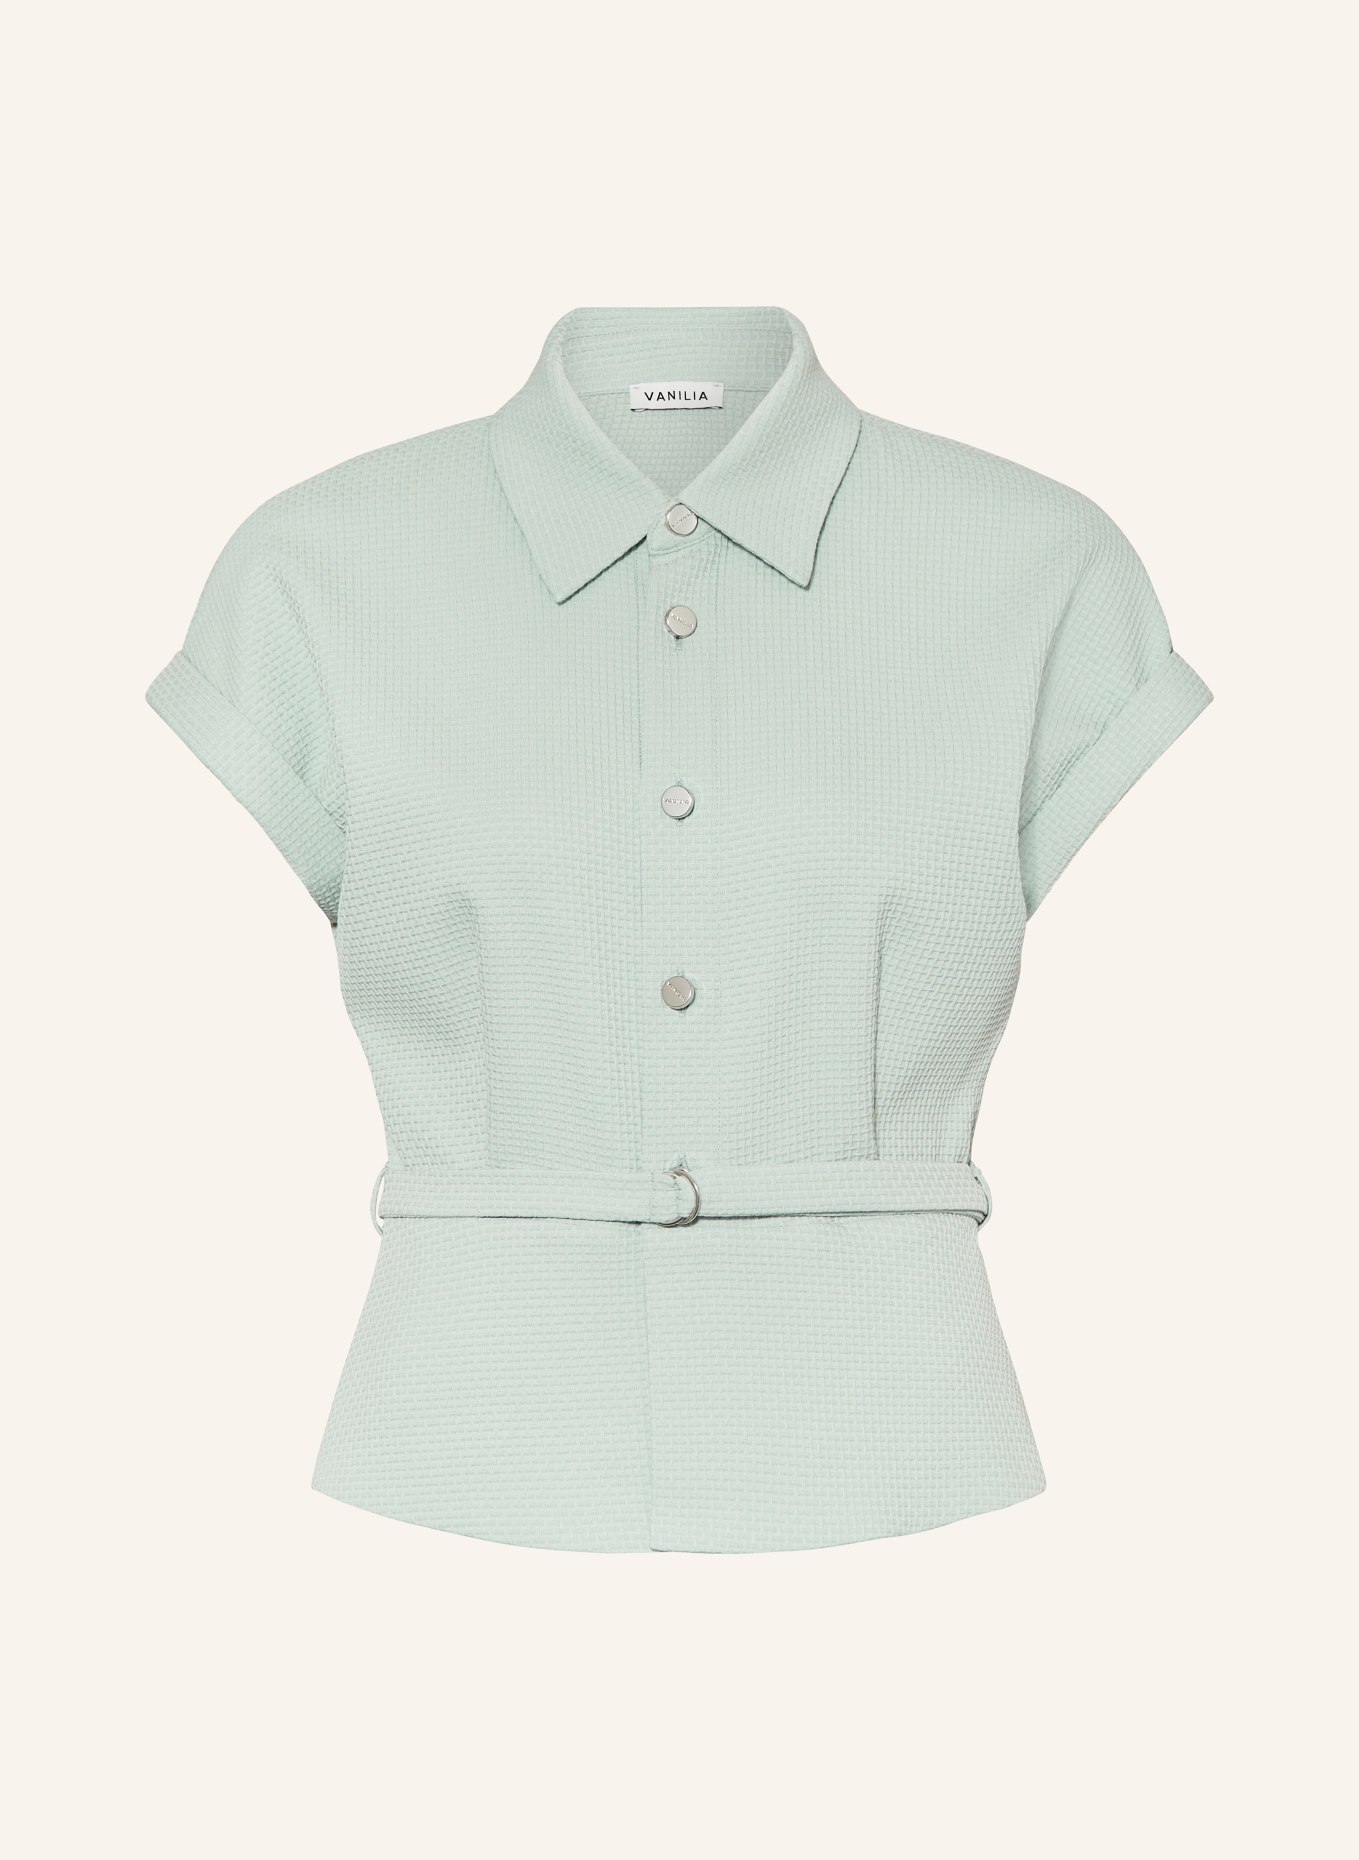 VANILIA Shirt blouse made of piqué, Color: MINT (Image 1)